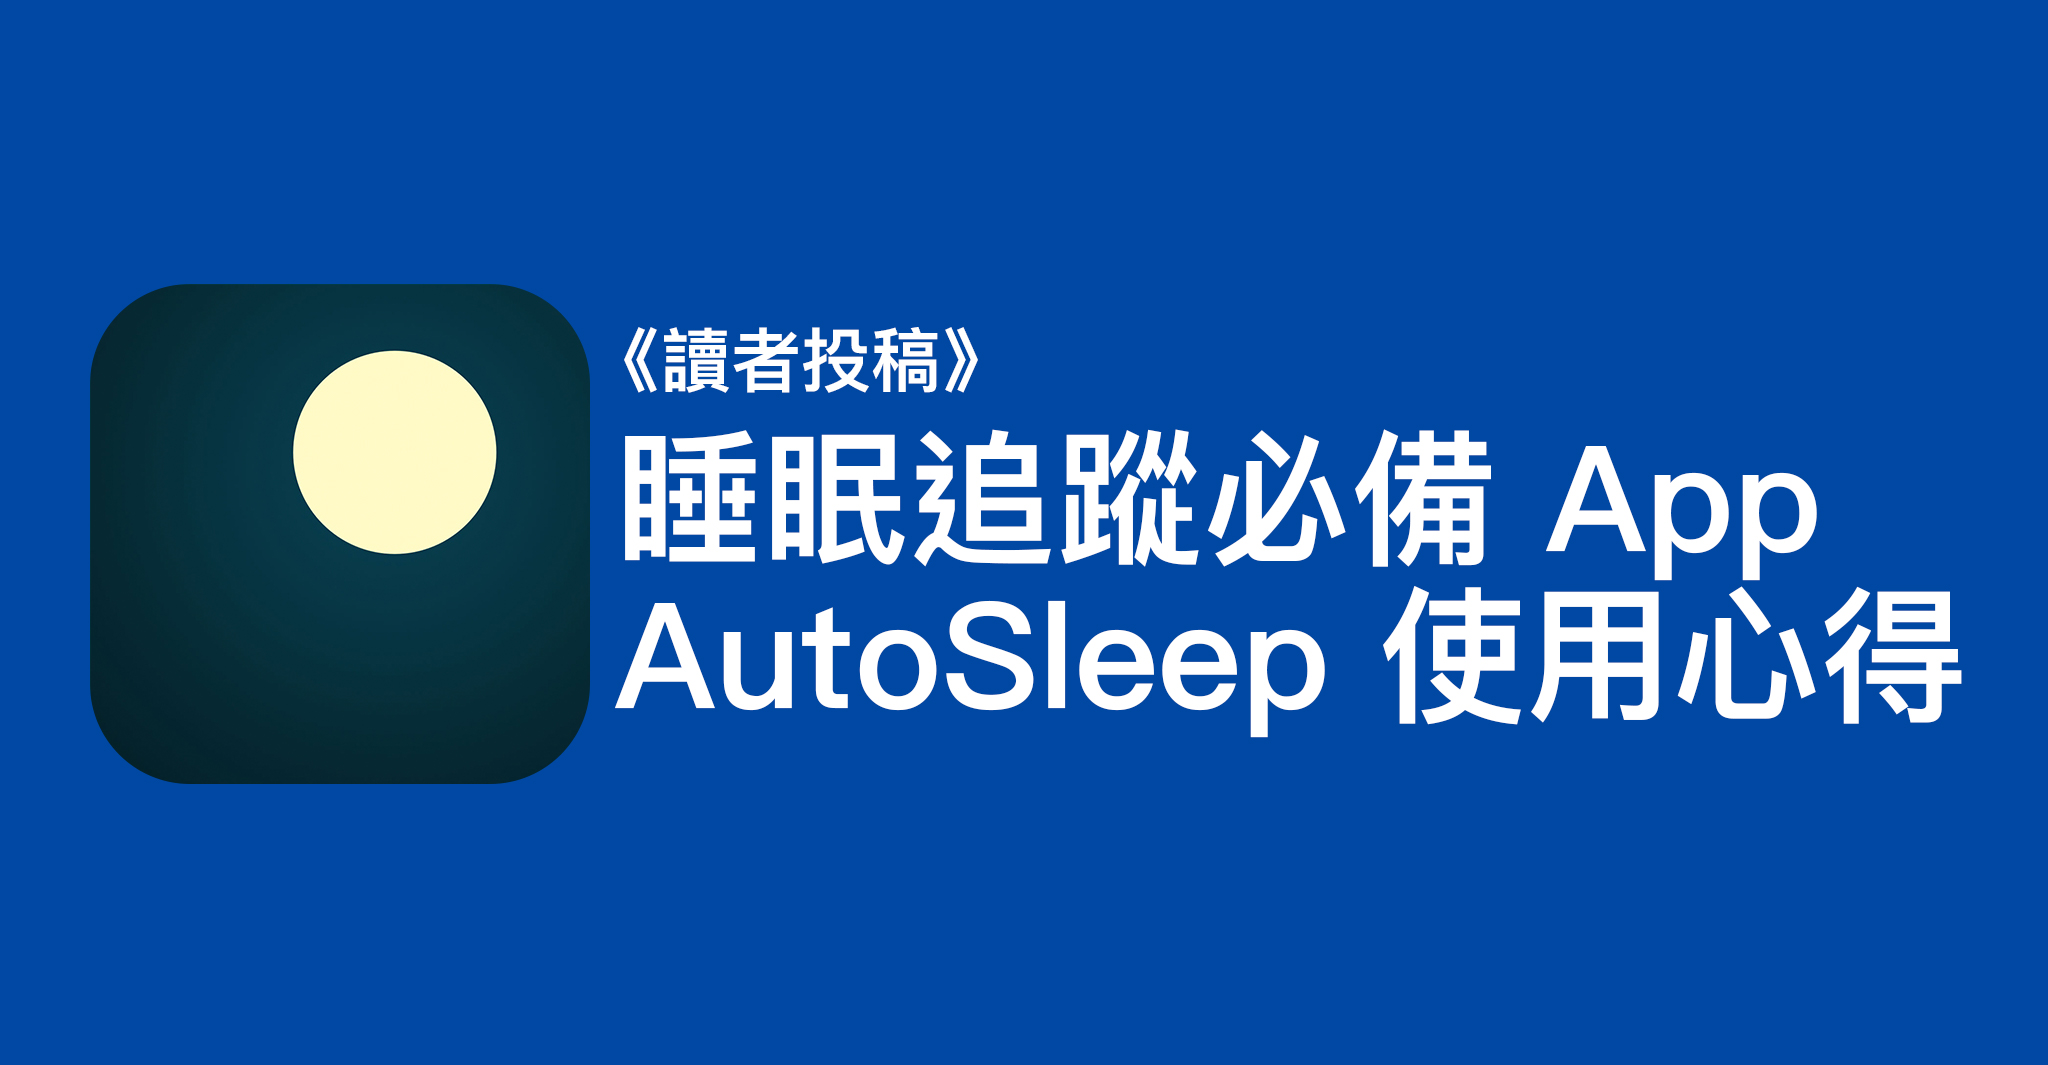 睡眠追蹤必備 App - AutoSleep 使用心得